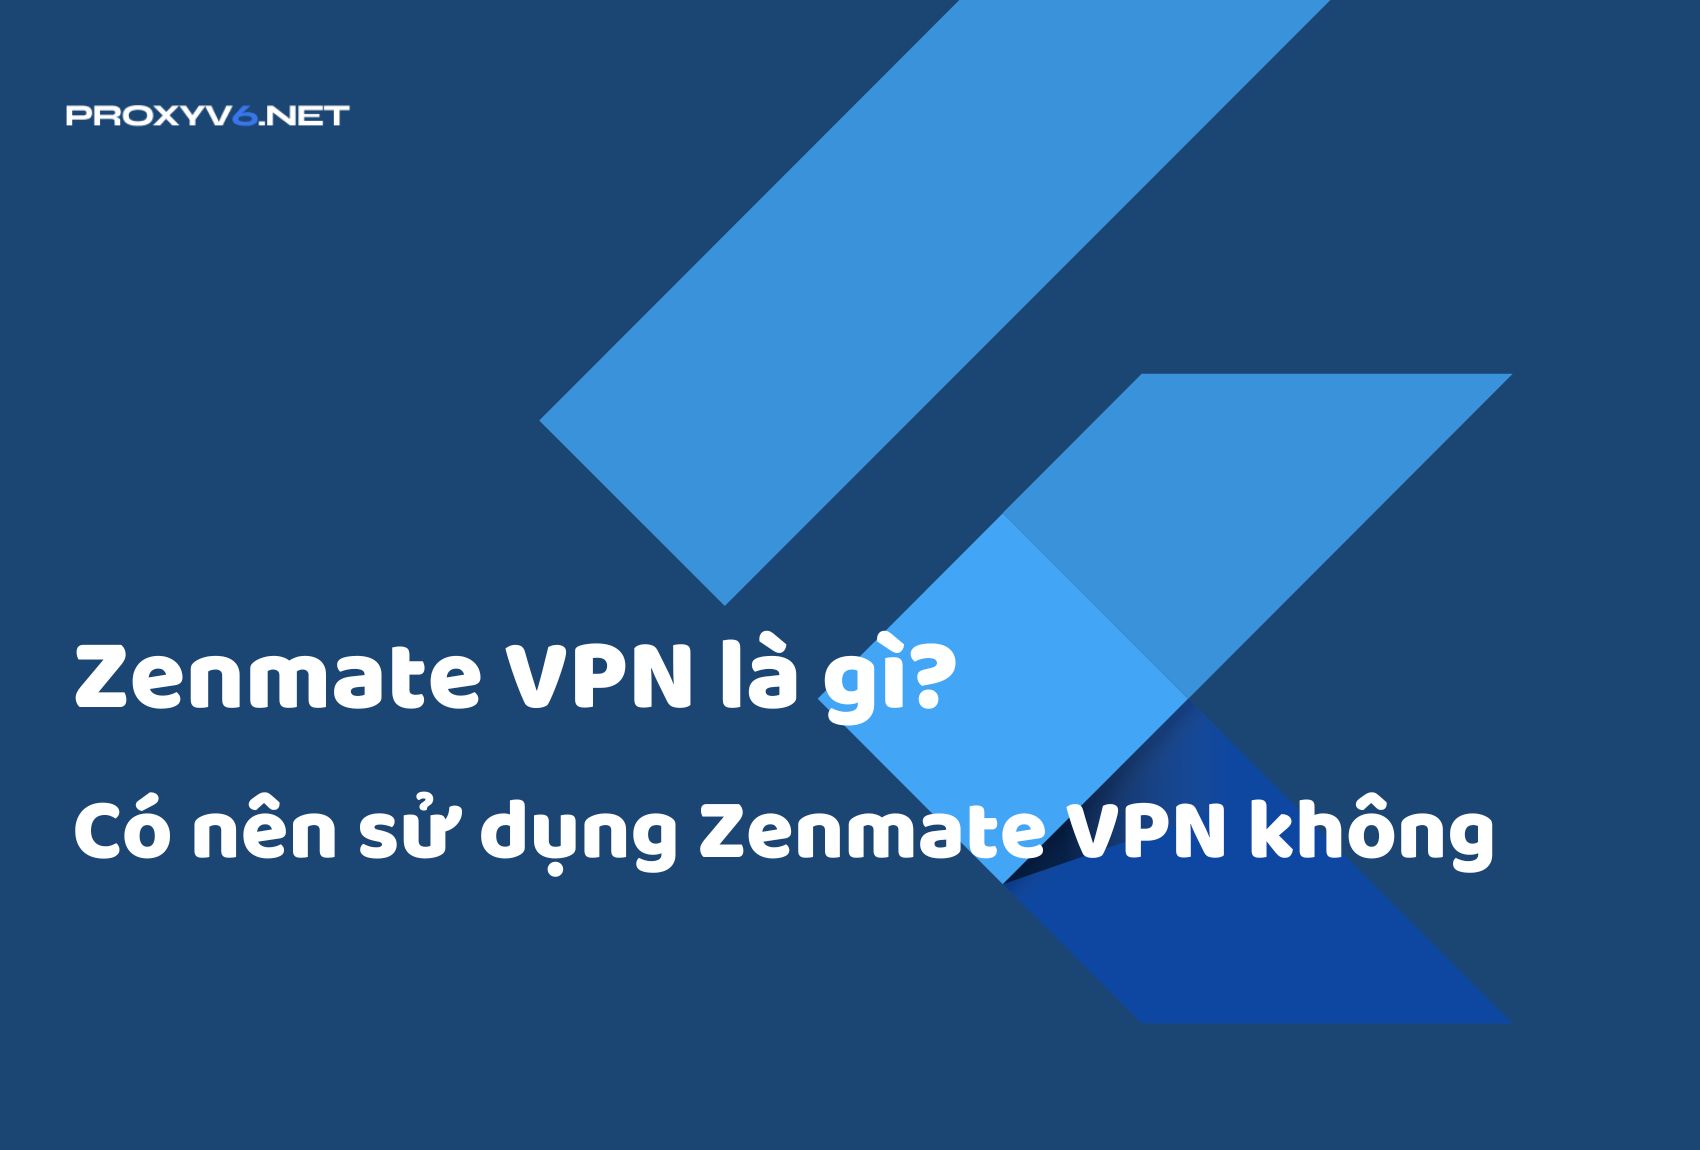 Zenmate VPN là gì? Có nên sử dụng Zenmate VPN không